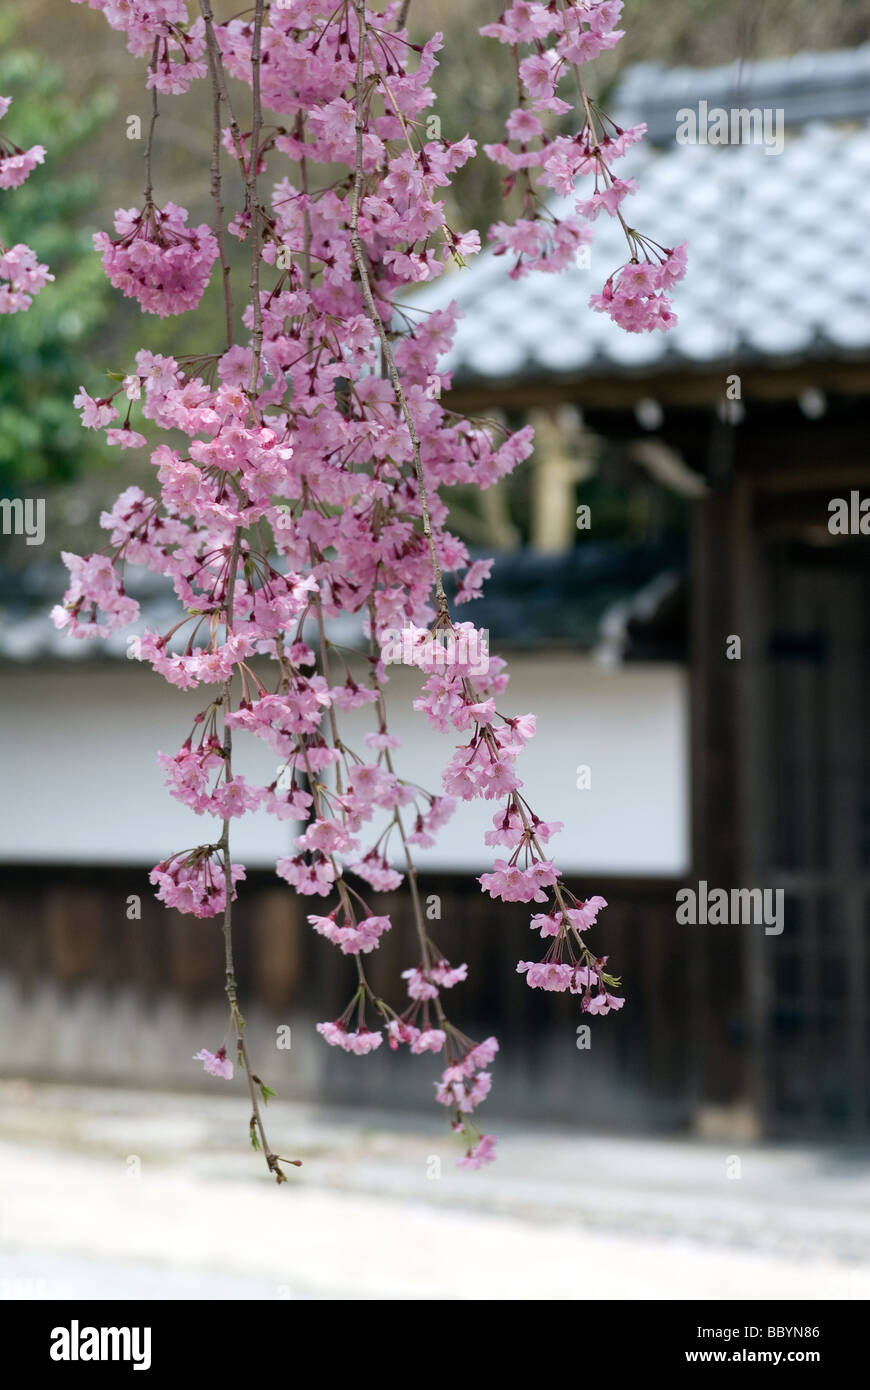 Ein zarte Zweig der Frühlingsblüten Kirsche hängt vor einer traditionellen japanischen Ziegeldach Gebäude in eine künstlerische Komposition Stockfoto